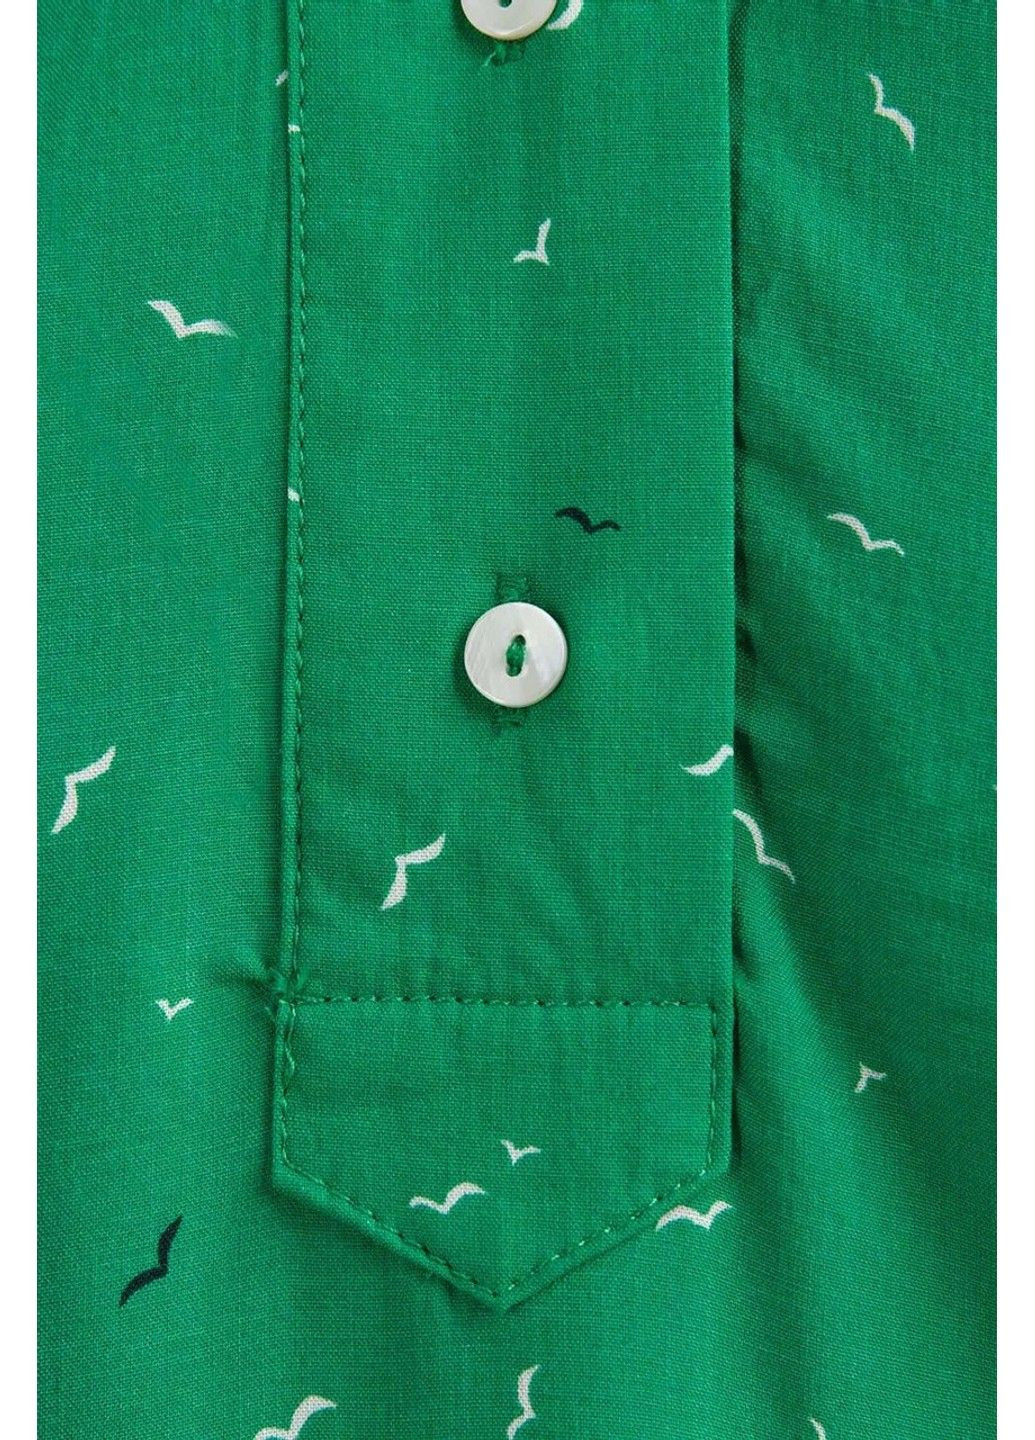 Зеленая летняя блузка s19-14080-500 Finn Flare